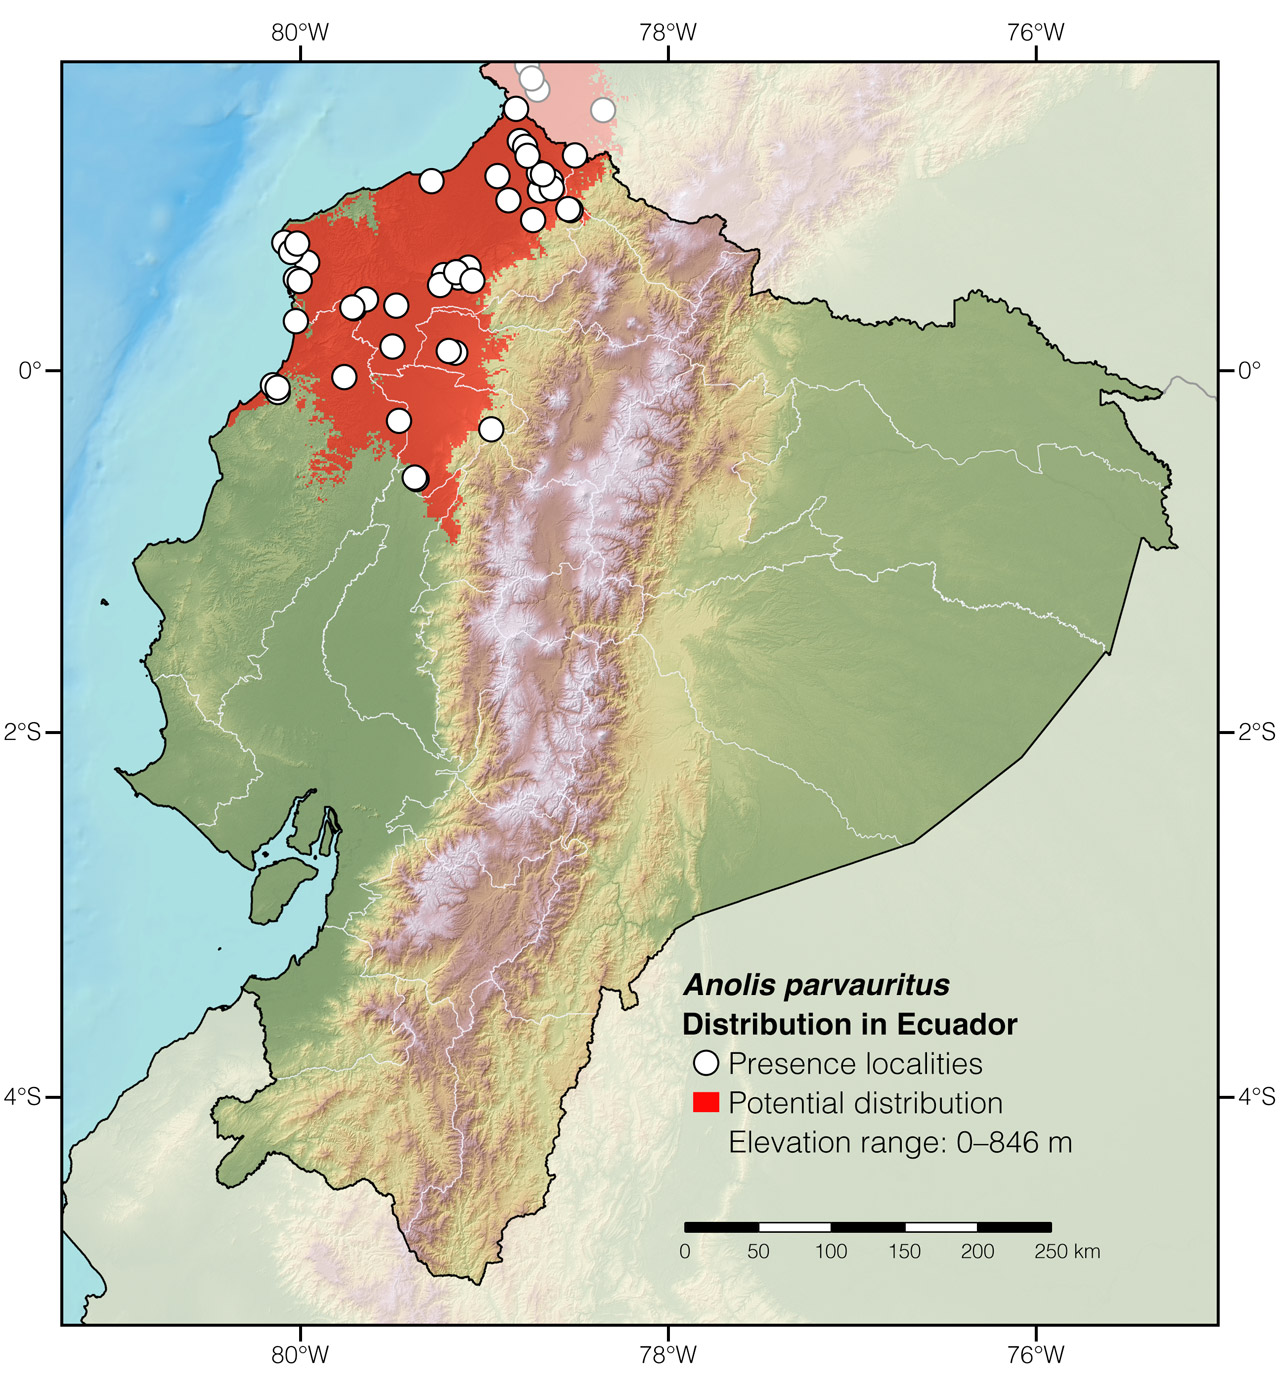 Distribution of Anolis parvauritus in Ecuador